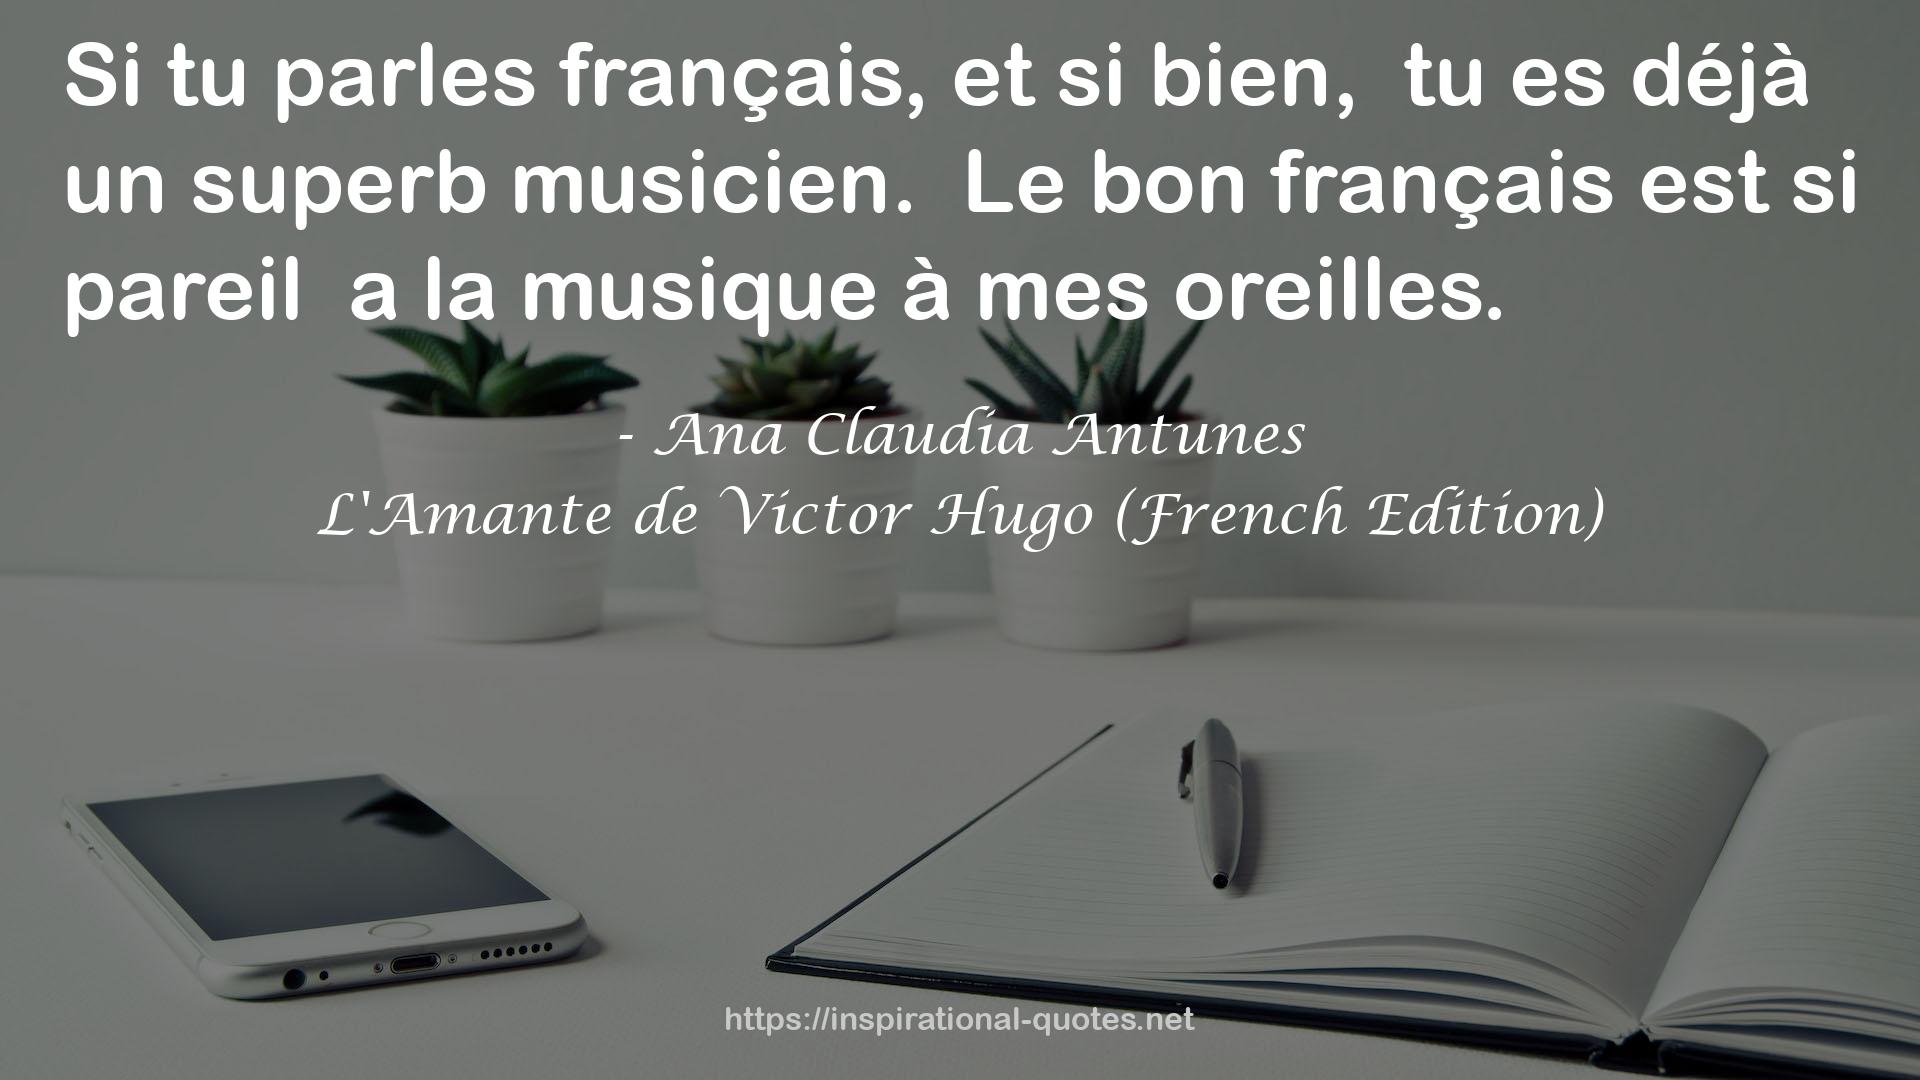 L'Amante de Victor Hugo (French Edition) QUOTES